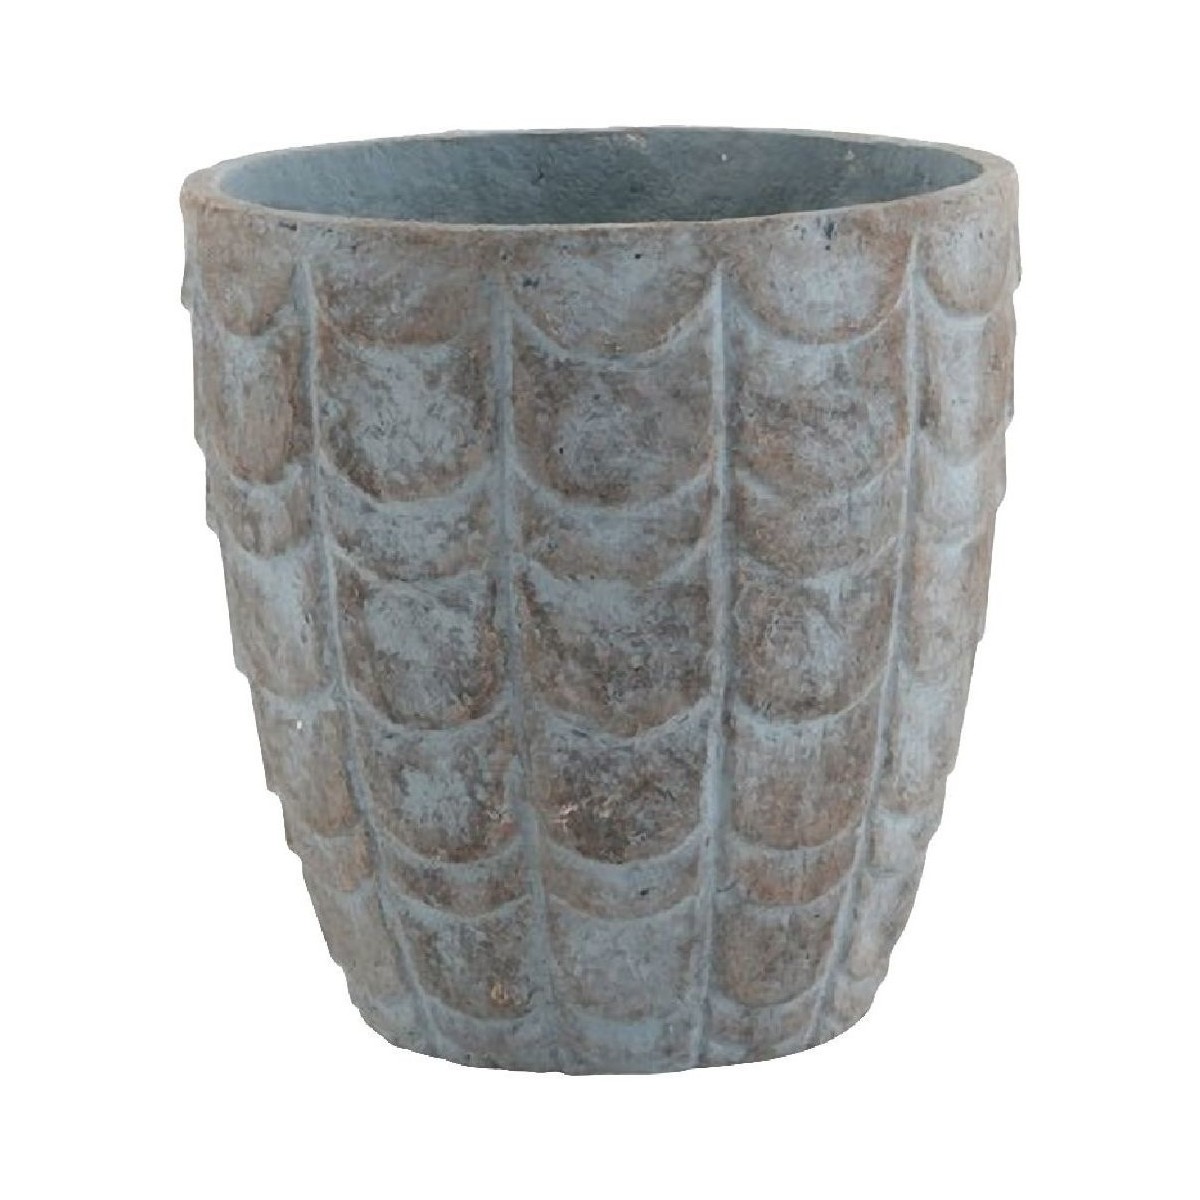 Maison & Déco Vases / caches pots d'intérieur Jolipa Cache Pot de Fleur reliefs écailles aspect céramique Bleu